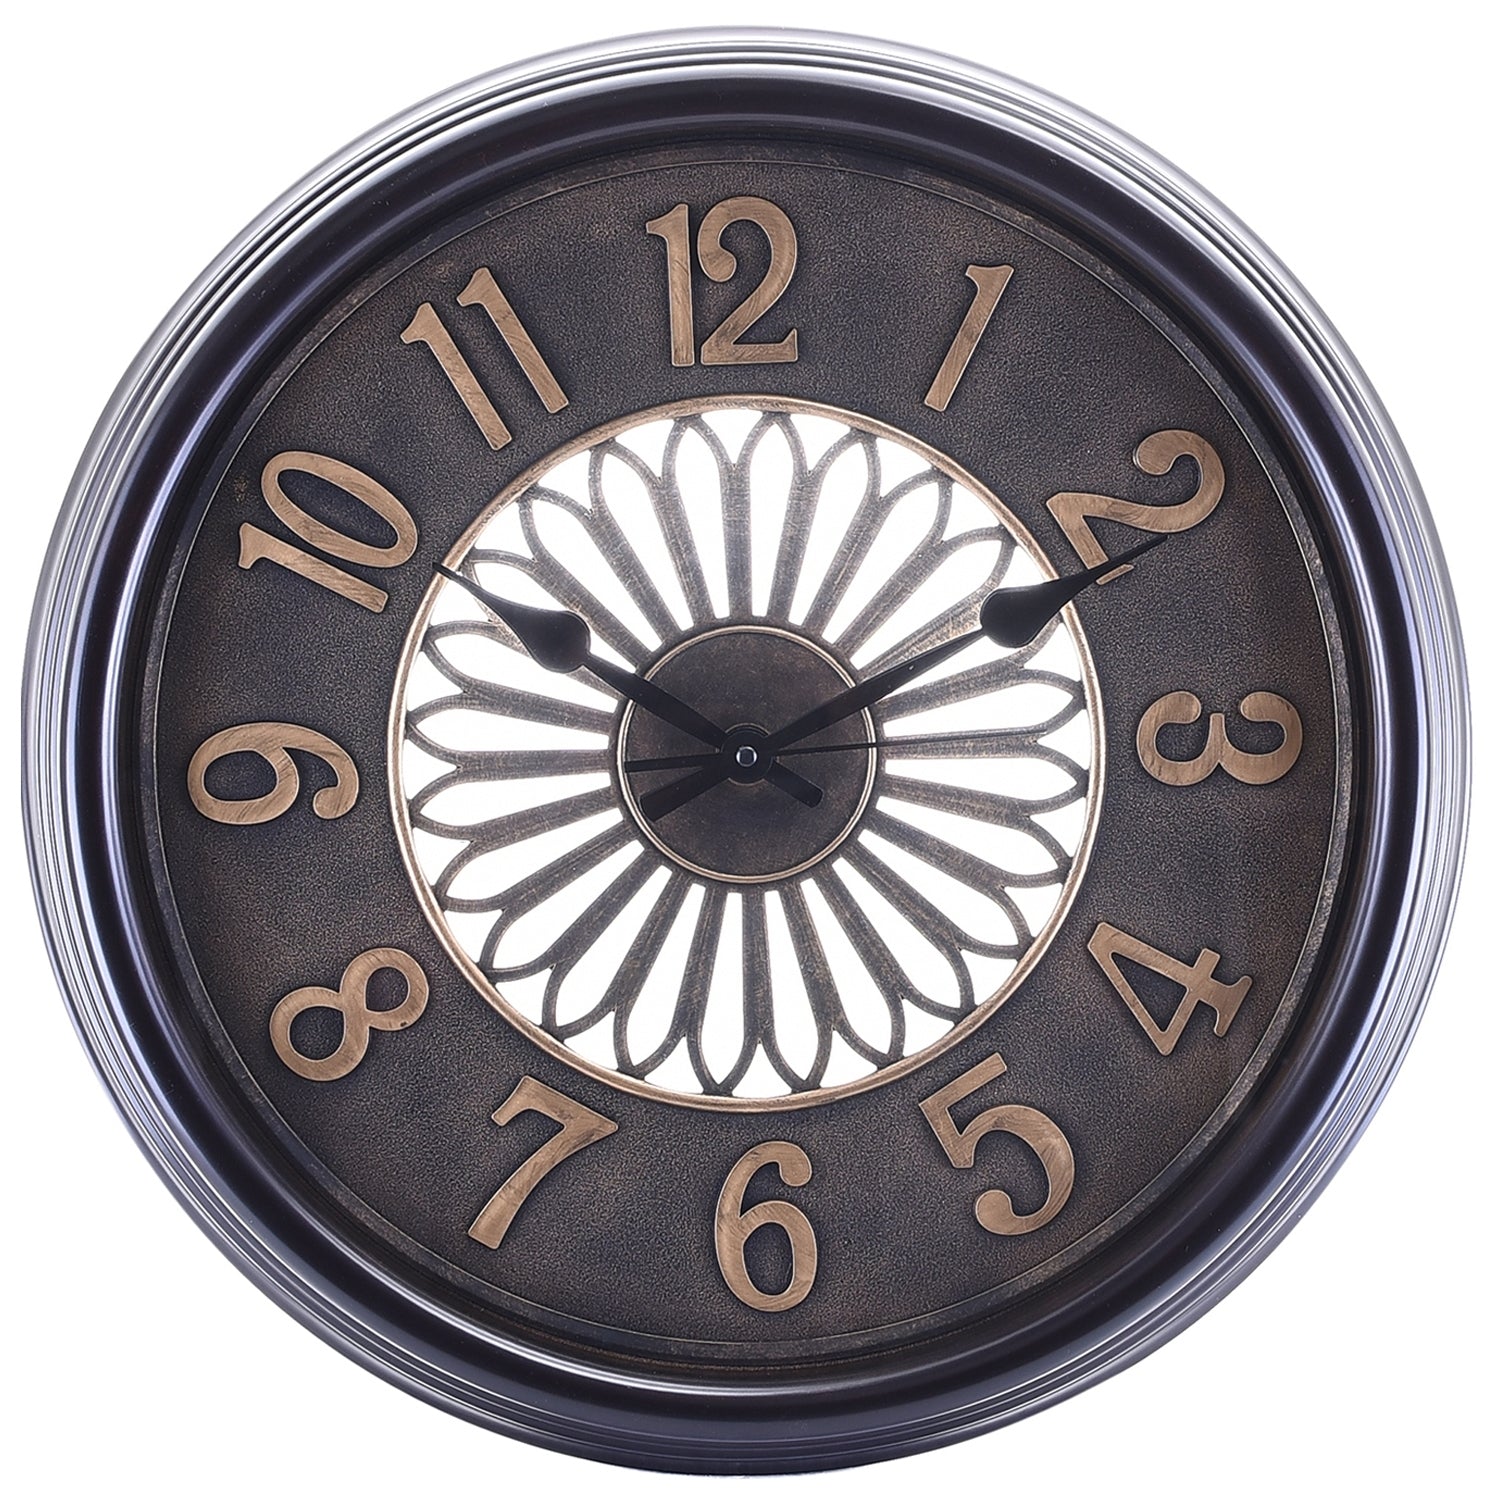 Premium Antique Design Analog Wall Clock 8